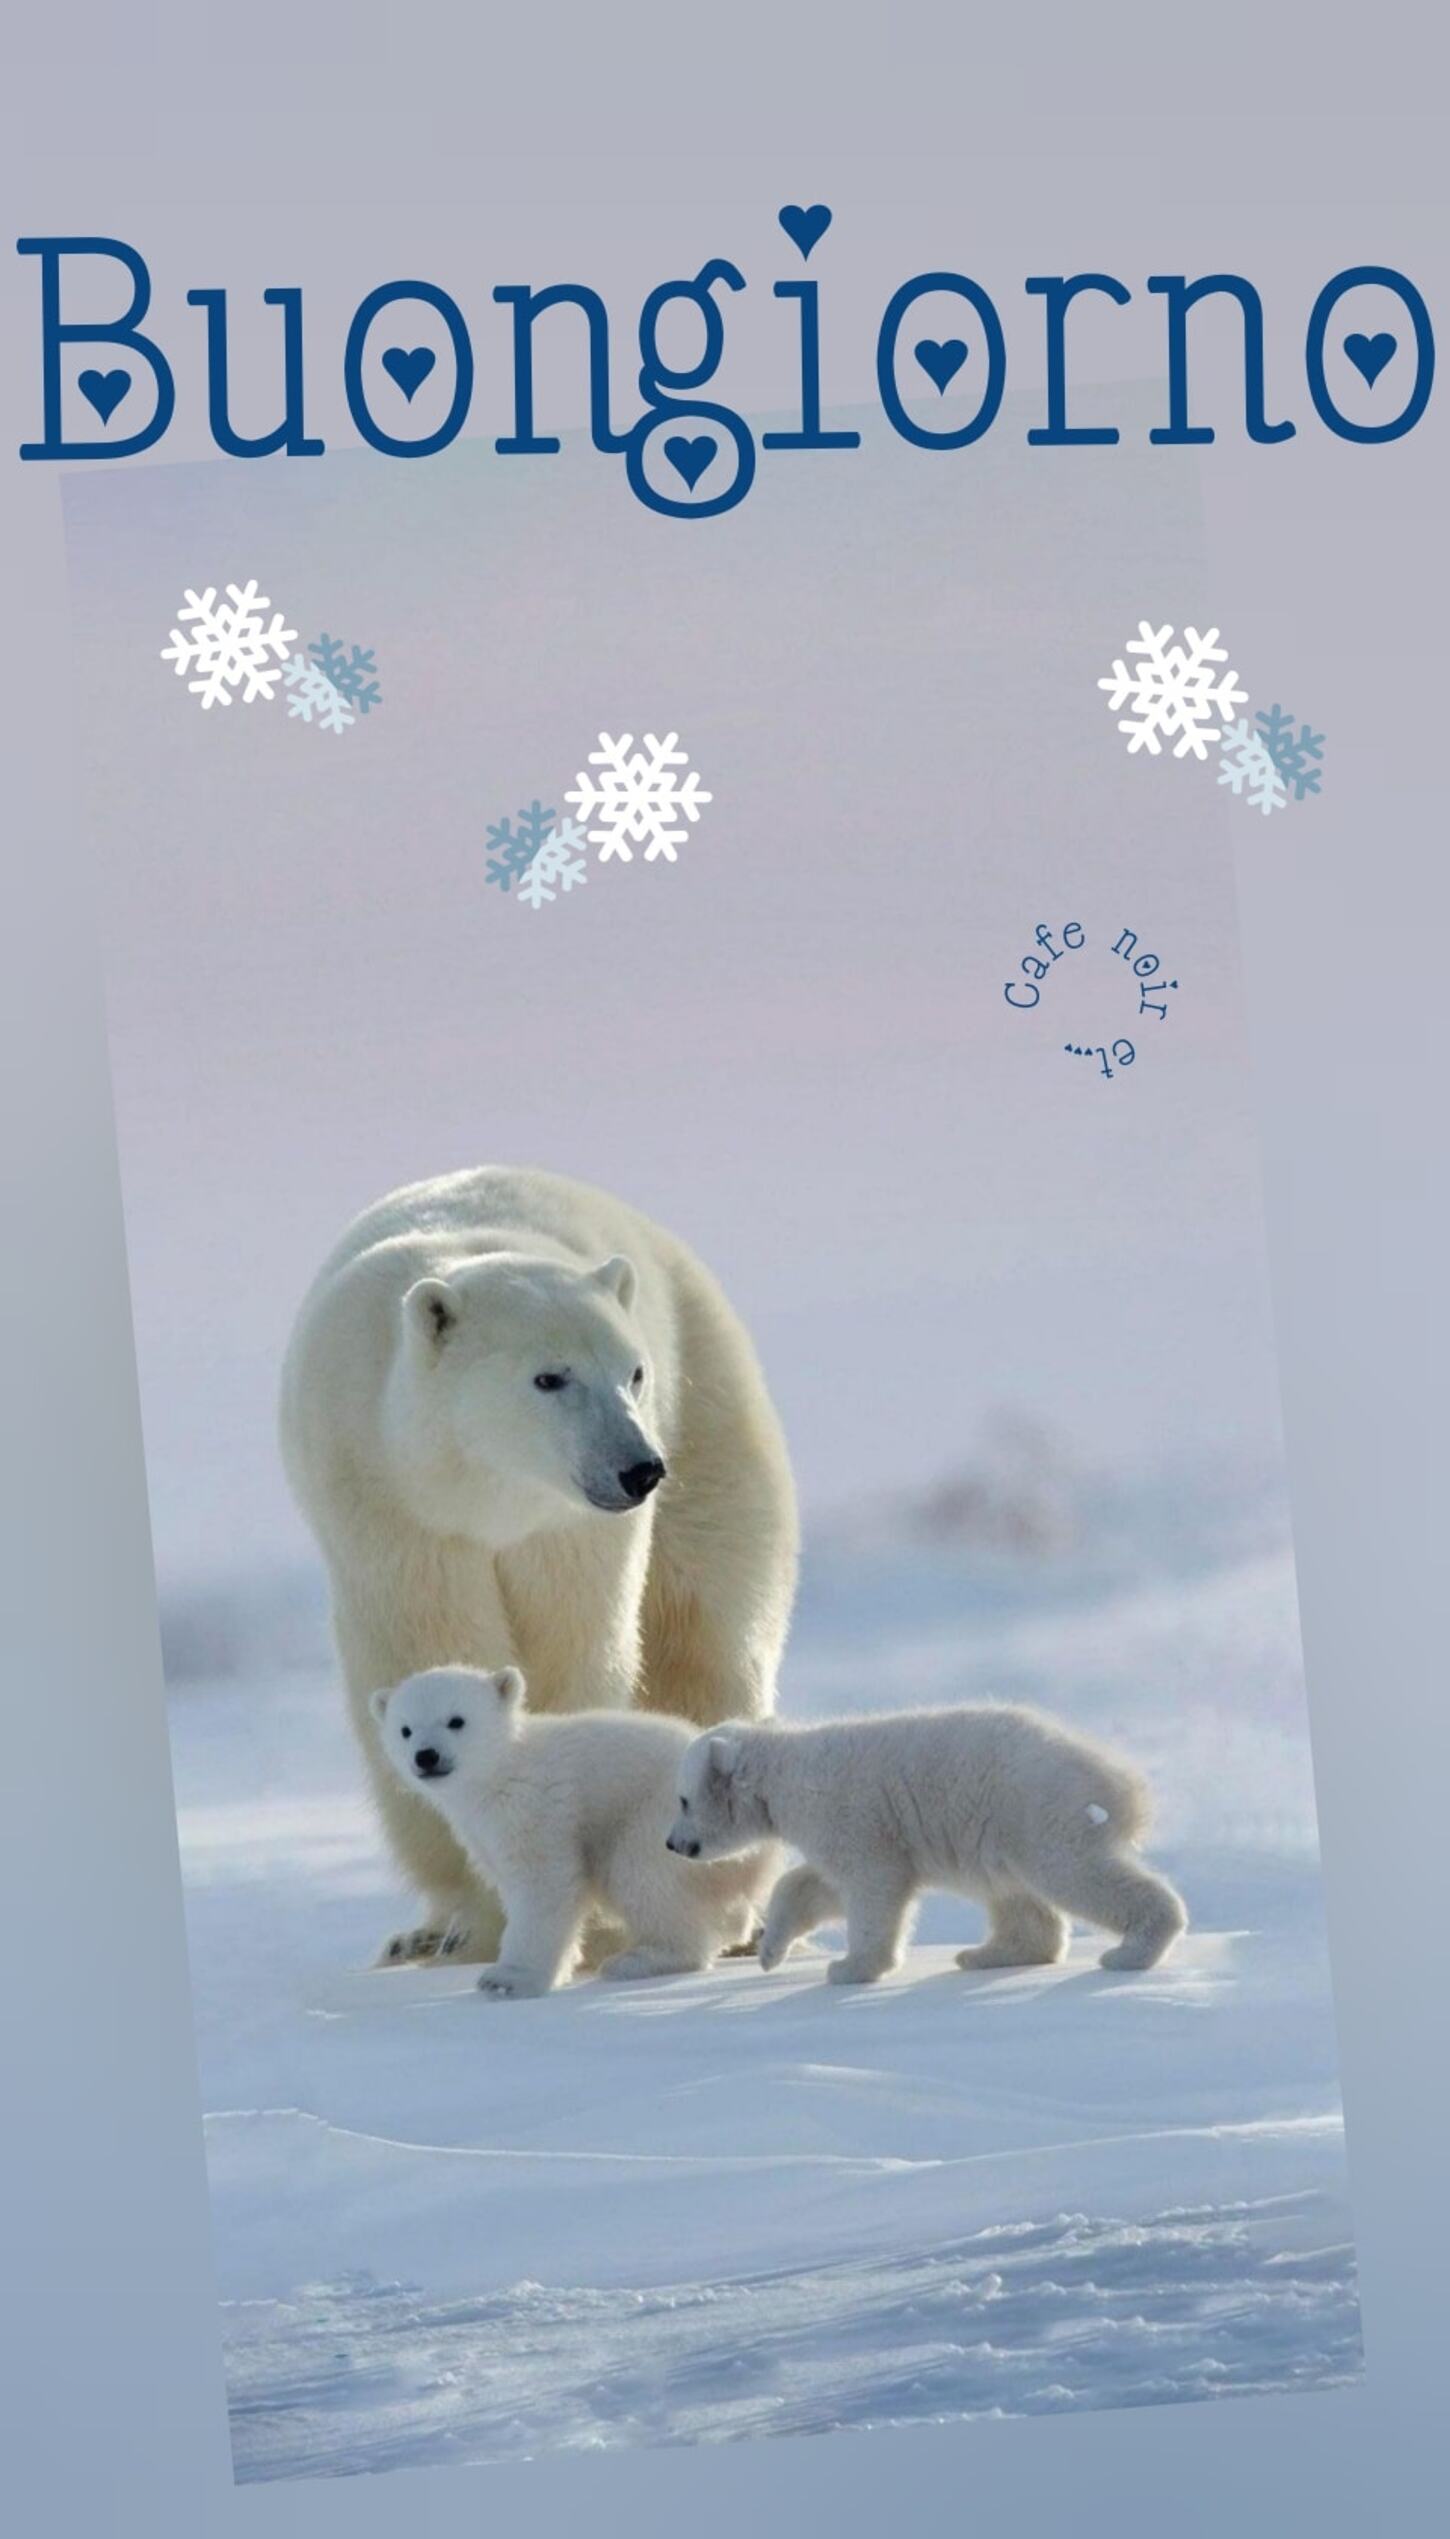 Buongiorno con gli orsi polari